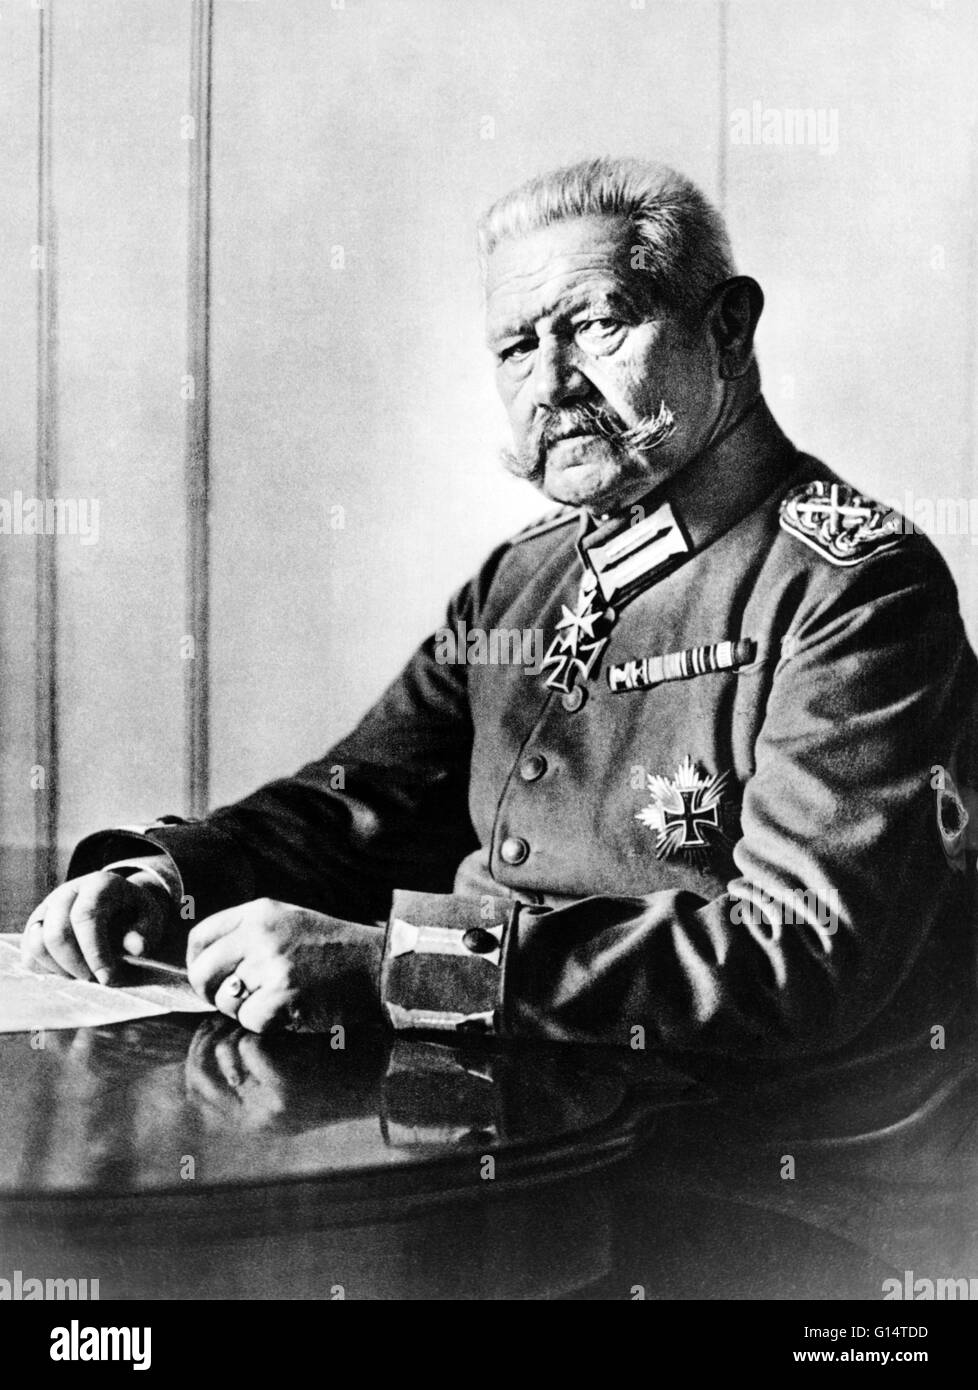 Paul Ludwig Hans Anton von Beneckendorff und von Hindenburg (2 ottobre 1847 - 2 agosto 1934) era un Prussian-German maresciallo di campo, statista e uomo politico, e servito come il secondo Presidente della Repubblica federale di Germania dal 1925 al 1934. Egli ha goduto di una lunga carriera in Foto Stock